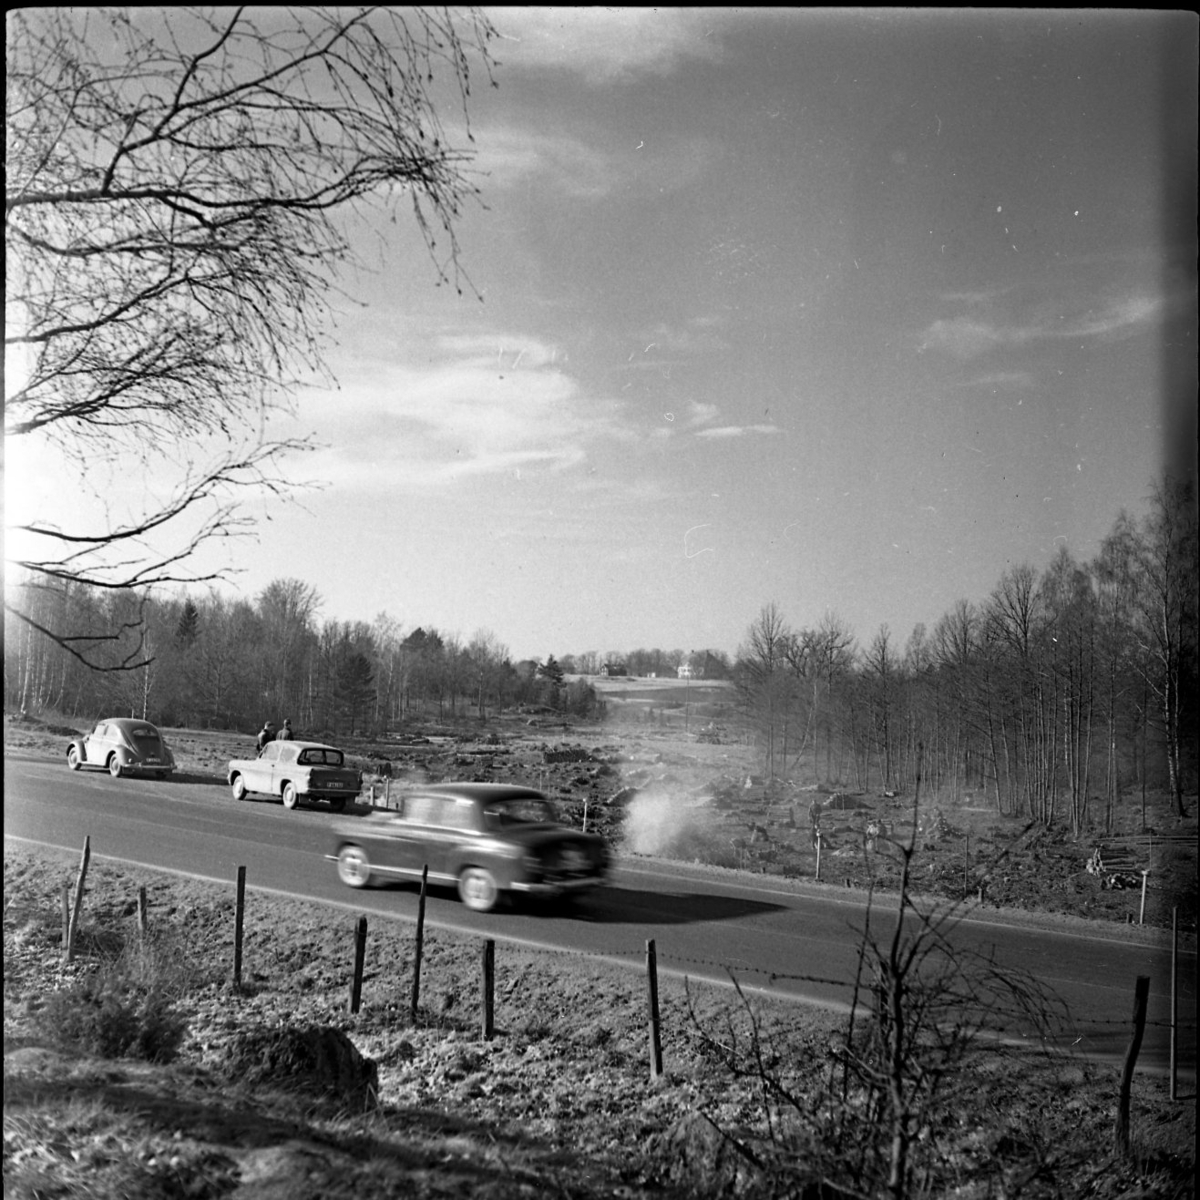 Vy mot rikshuvudväg 1. En bil fotograferas i farten. Bortanför vägen står arbetare och avverkar träd inför motorvägsbygge. I bakgrunden syns Västanå slott med flera byggnader.